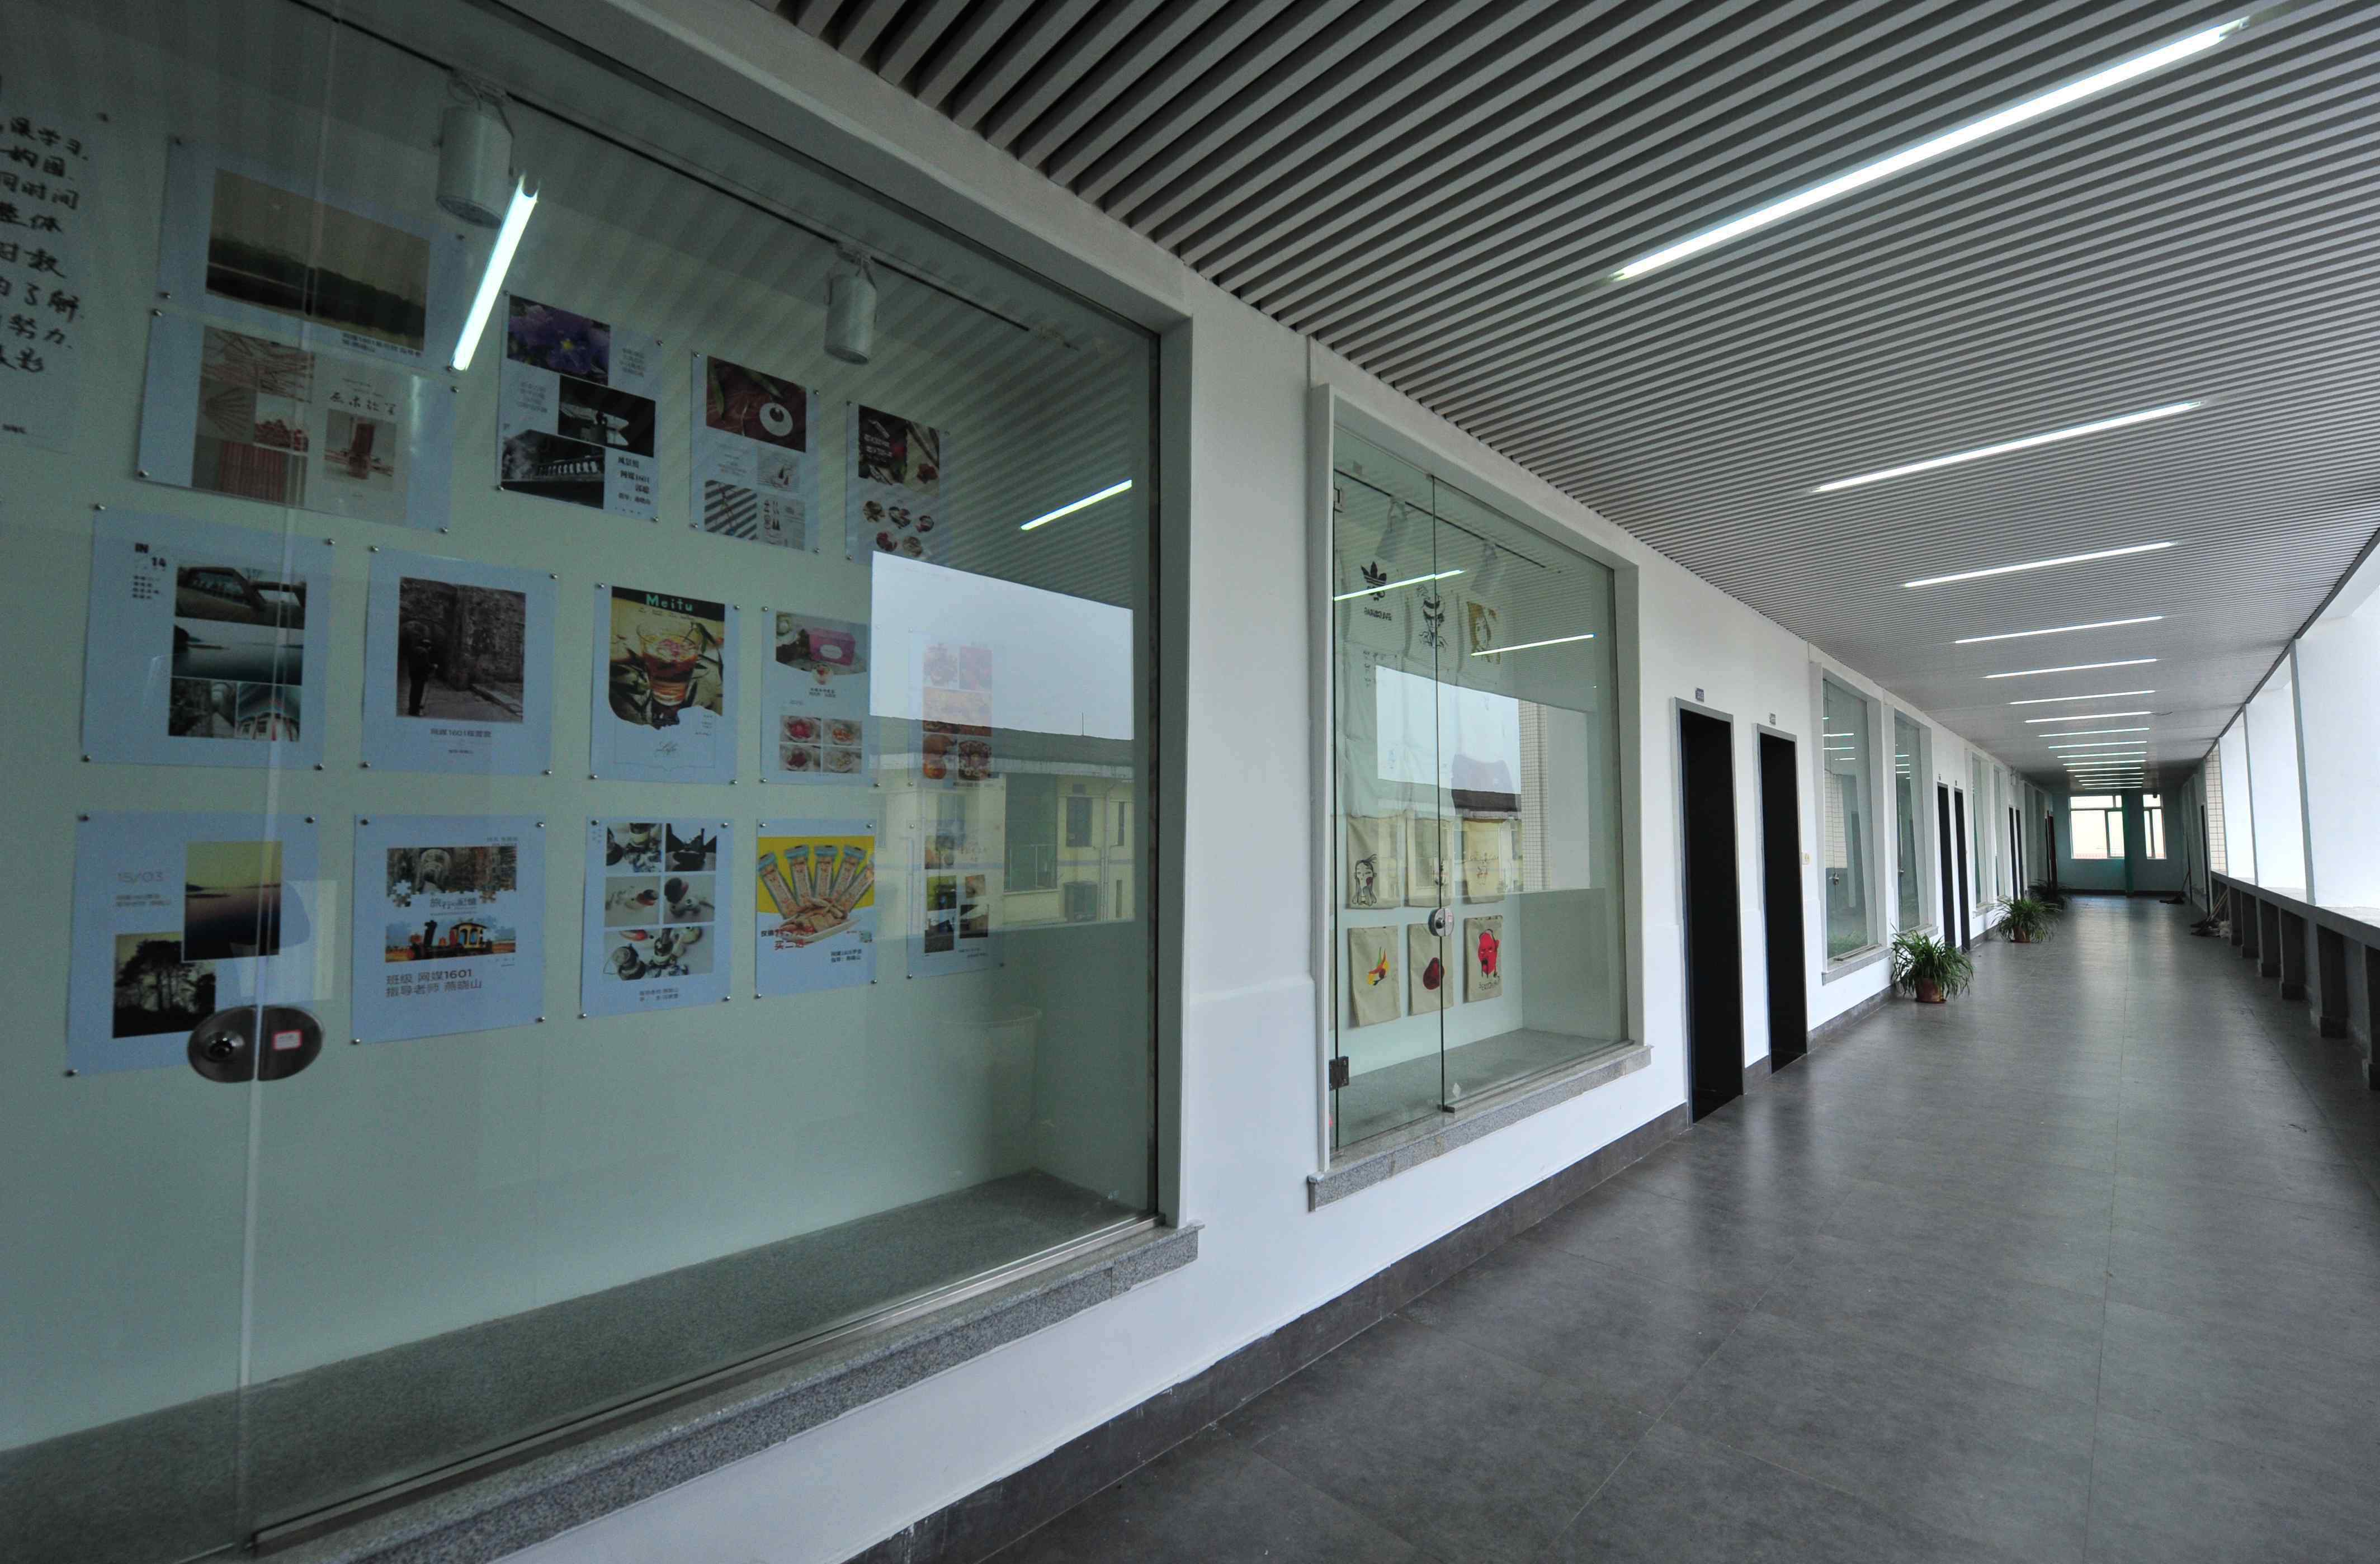 湖南工艺美术职业学院 2019让我们携手走进湖南工艺美术职业学院 —— 视觉传播设计与制作 电子商务艺术设计方向